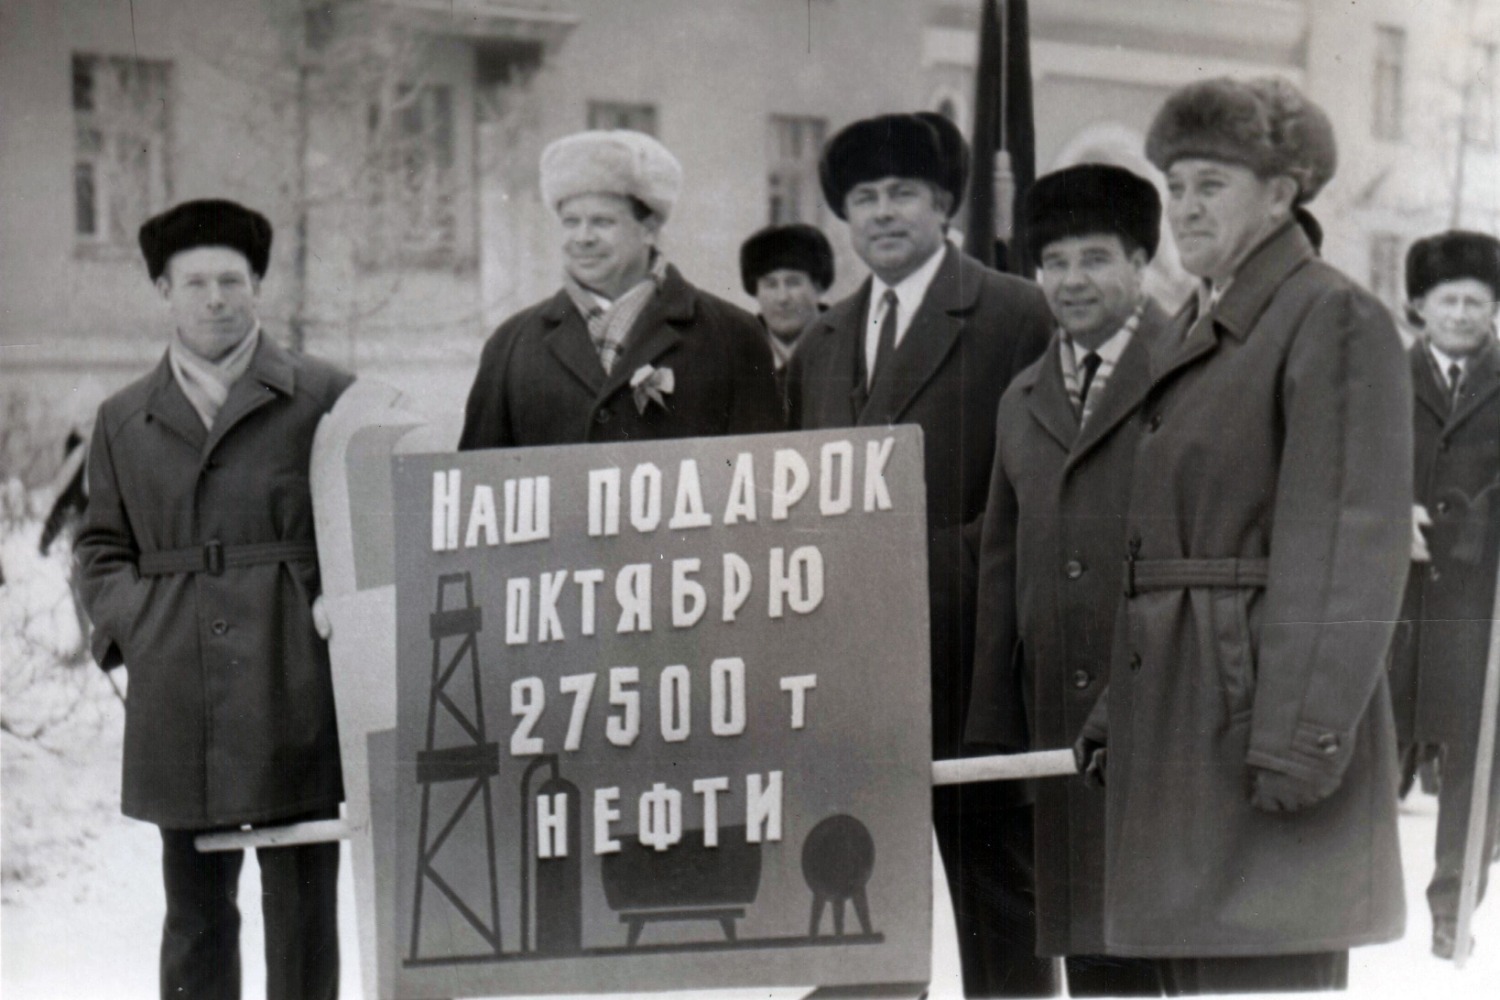 Фото из архива семьи Куршевых. Основатель династии Вячеслав Викторович Куршев (второй слева)  с коллегами на демонстрации.